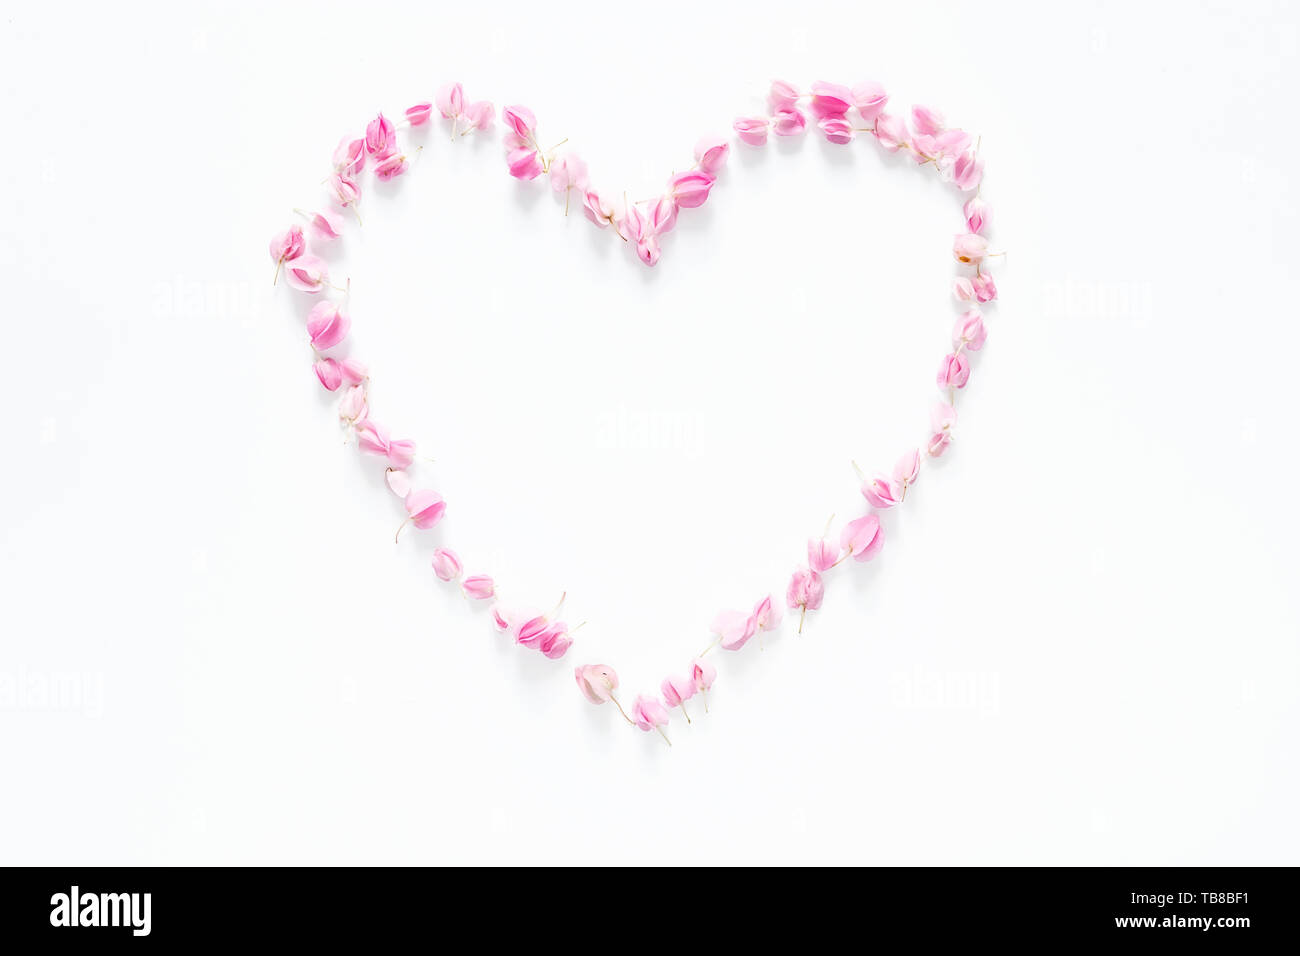 Plano de laicos corazón floral de rosa flores aisladas sobre fondo blanco, vista superior. Flor de la composición creativa Foto de stock